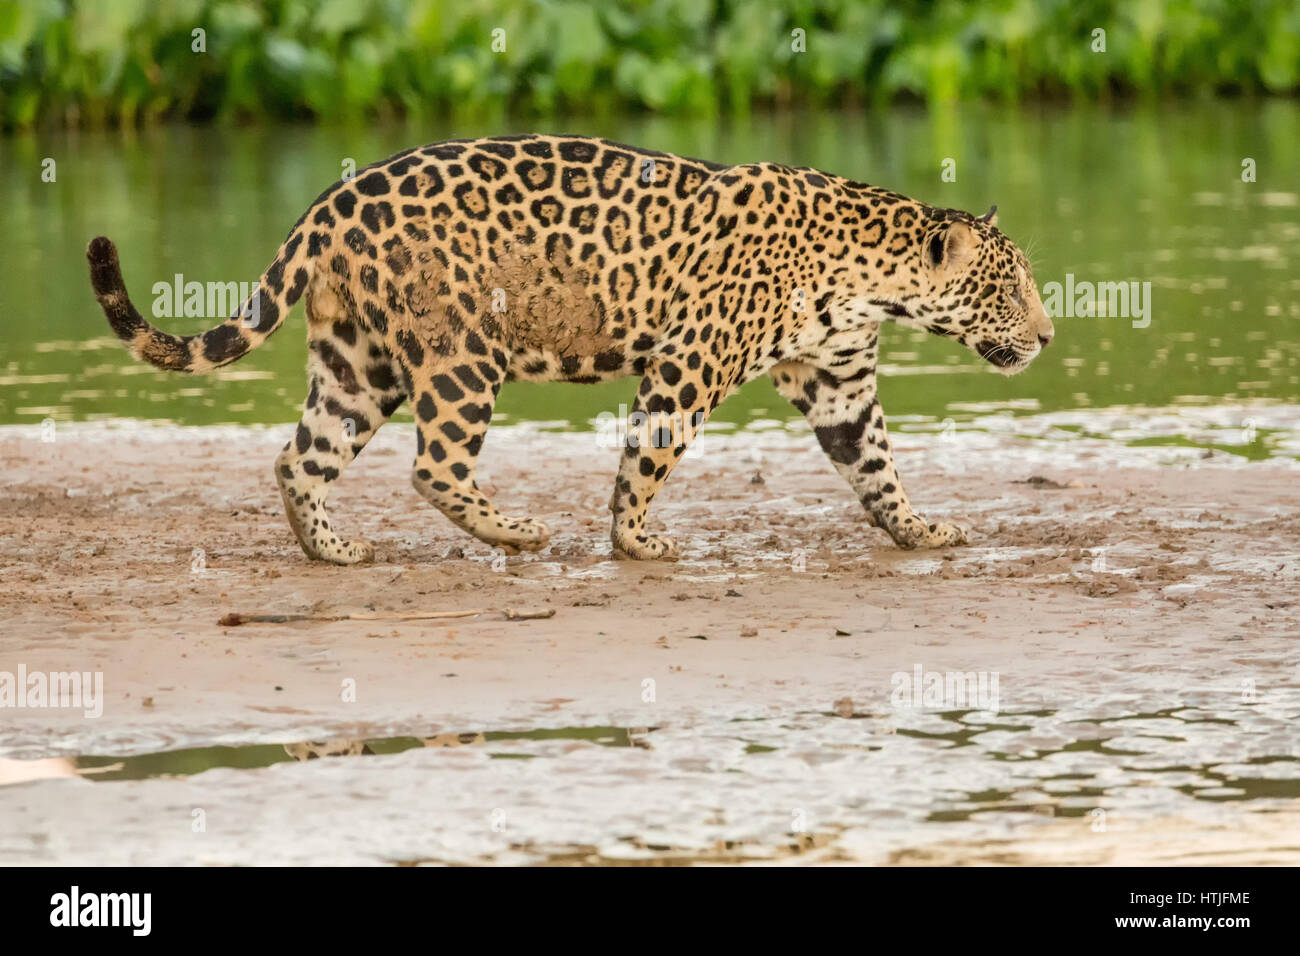 Jaguar zu Fuß auf einer Sandbank am Fluss Cuiaba Pantanal-Region, Bundesstaat Mato Grosso, Brasilien, Südamerika.  Gemeinsamen Wasserhyazinthen erstellen dick g Stockfoto